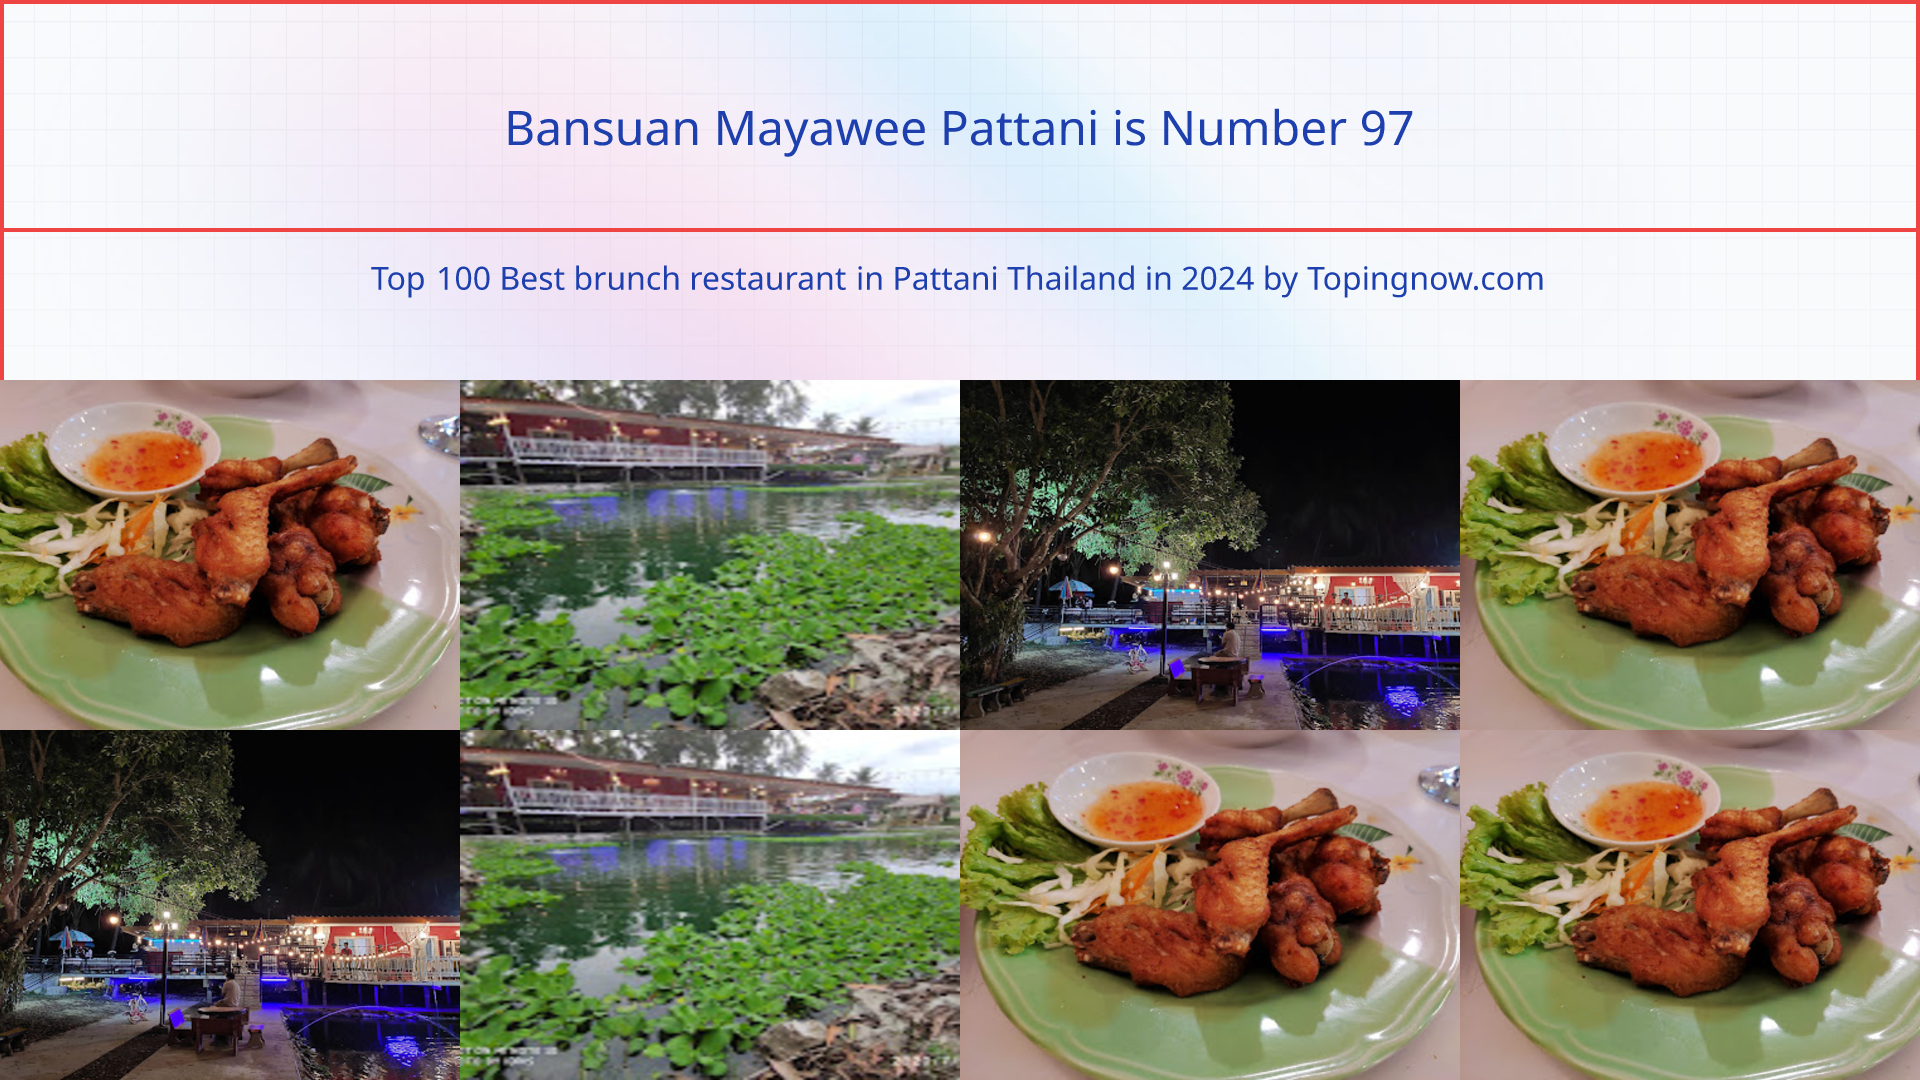 Bansuan Mayawee Pattani: Top 100 Best brunch restaurant in Pattani Thailand in 2024